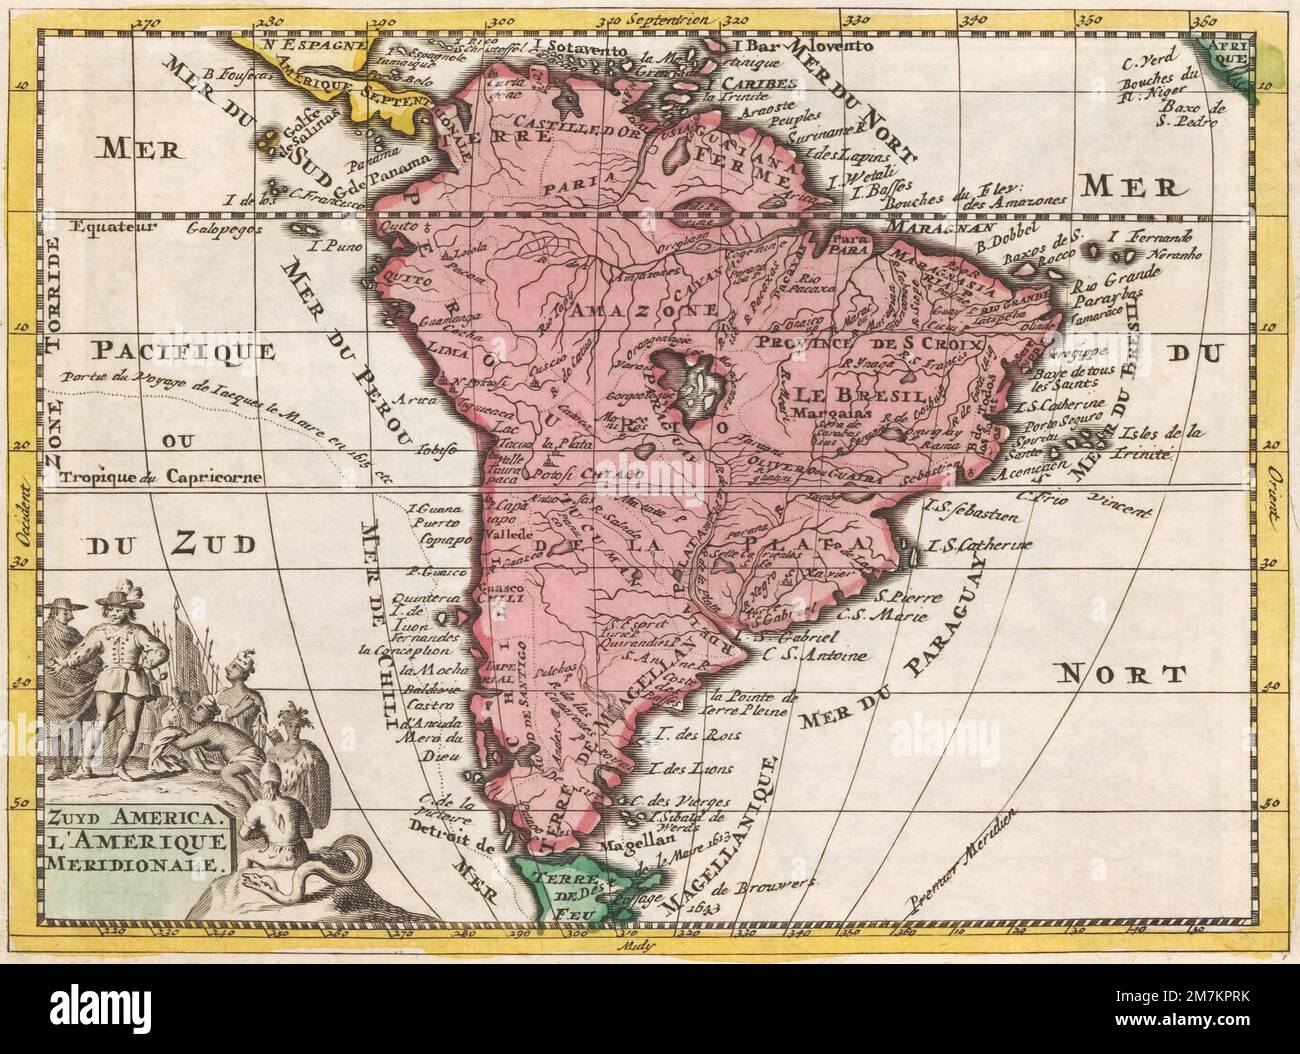 Une carte de l'Amérique du Sud du début du 18th siècle par un cartographe anonyme. Banque D'Images